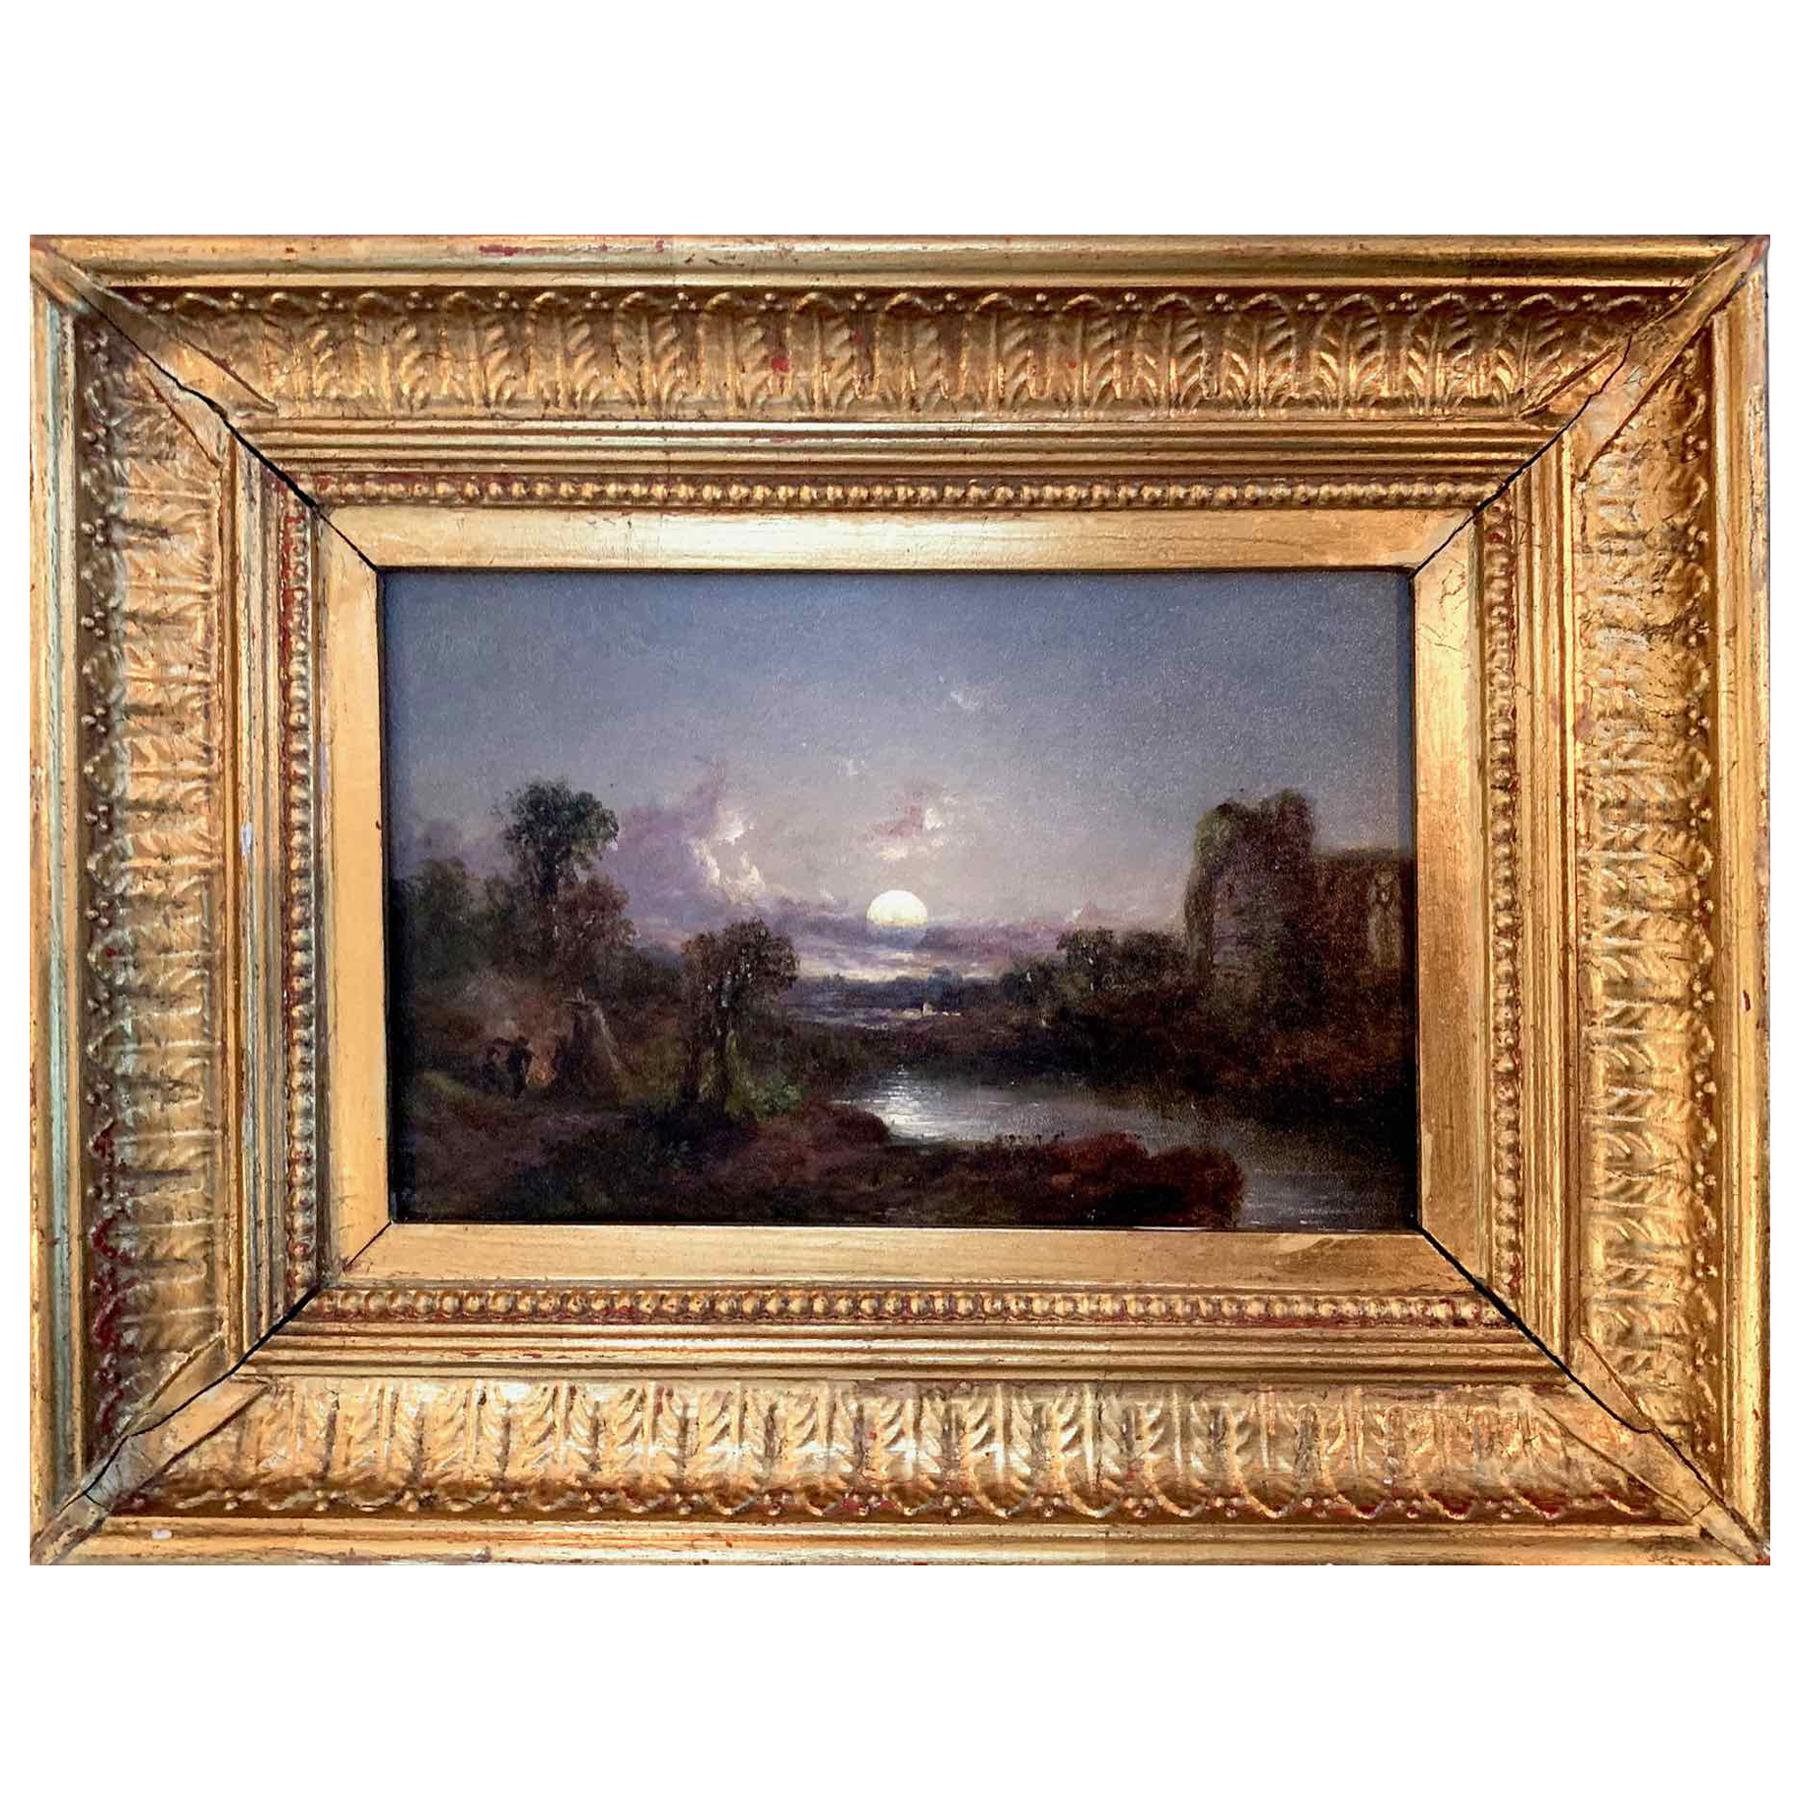 Peinture de paysage du début du XIXe siècle, dans le style de David David Friedrich